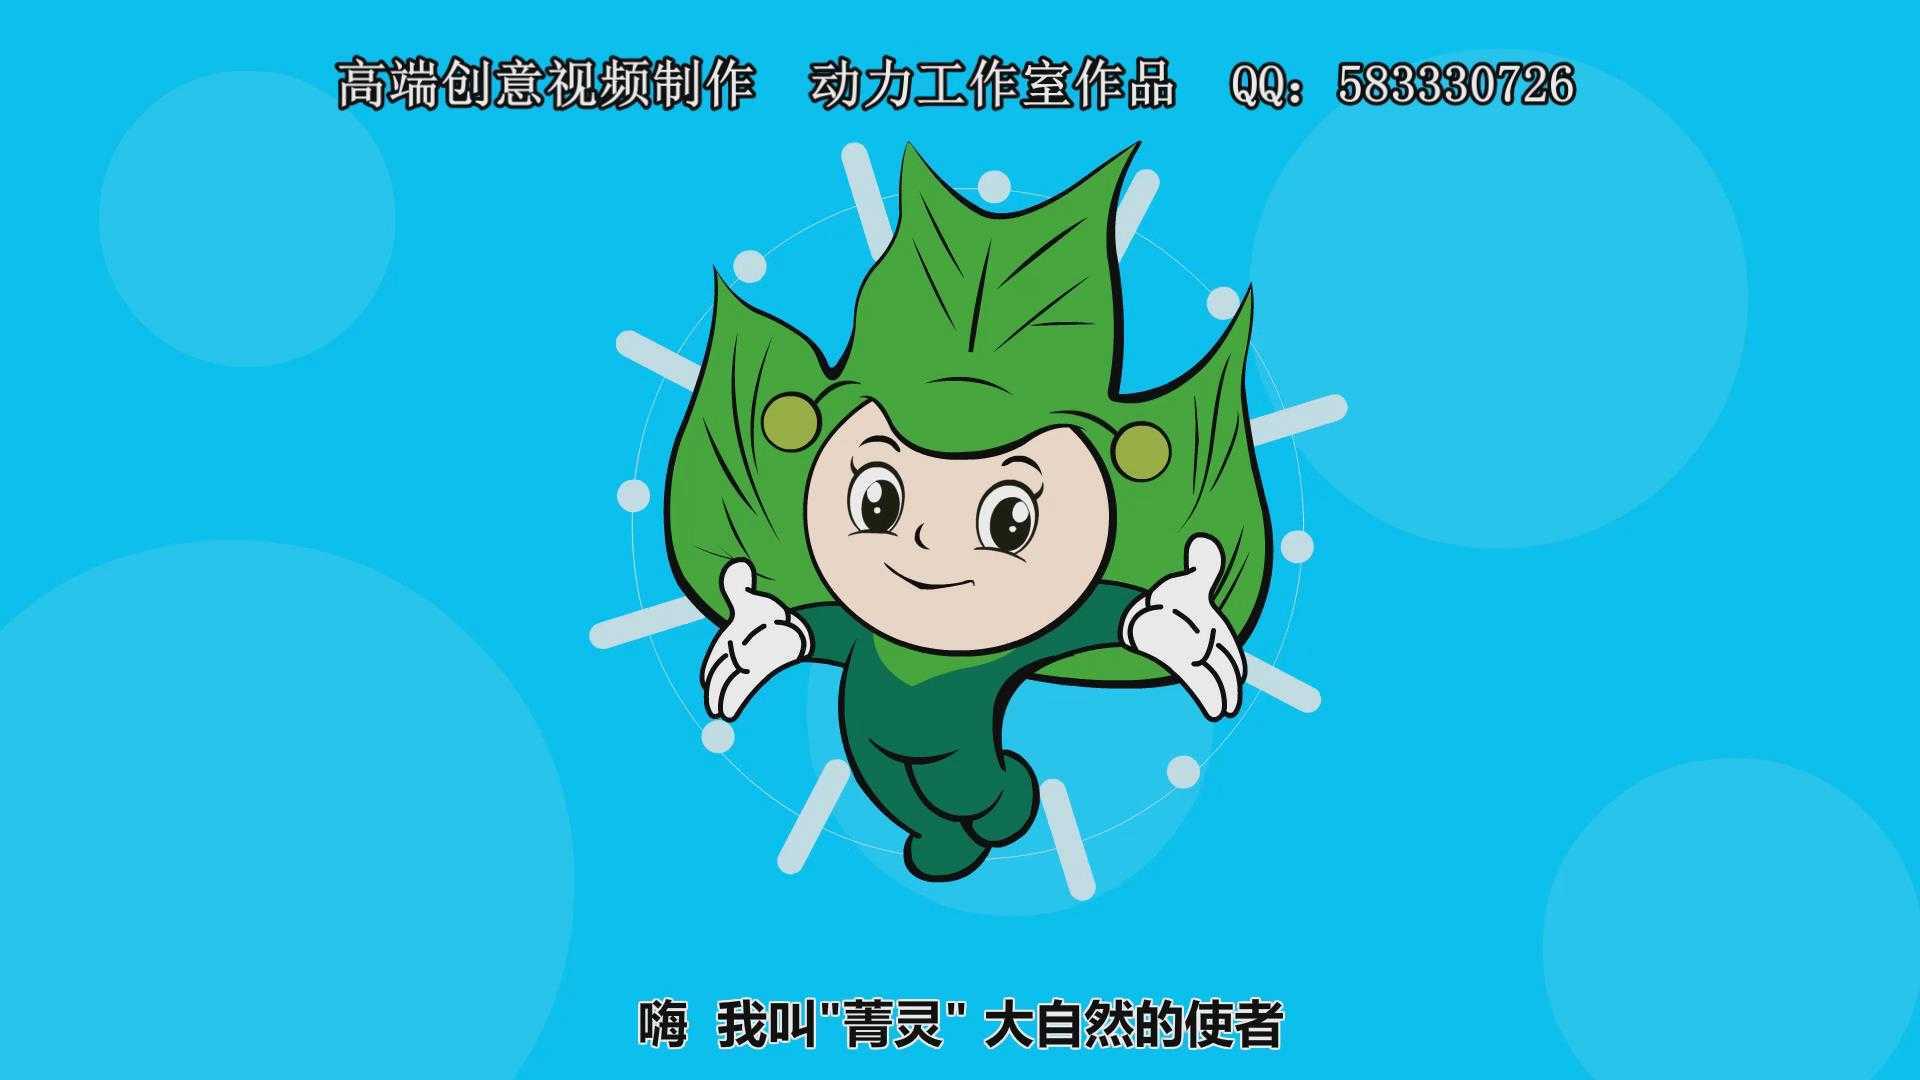 吉祥物宣传 活动宣传动画 动力动漫工作室　QQ：583330726